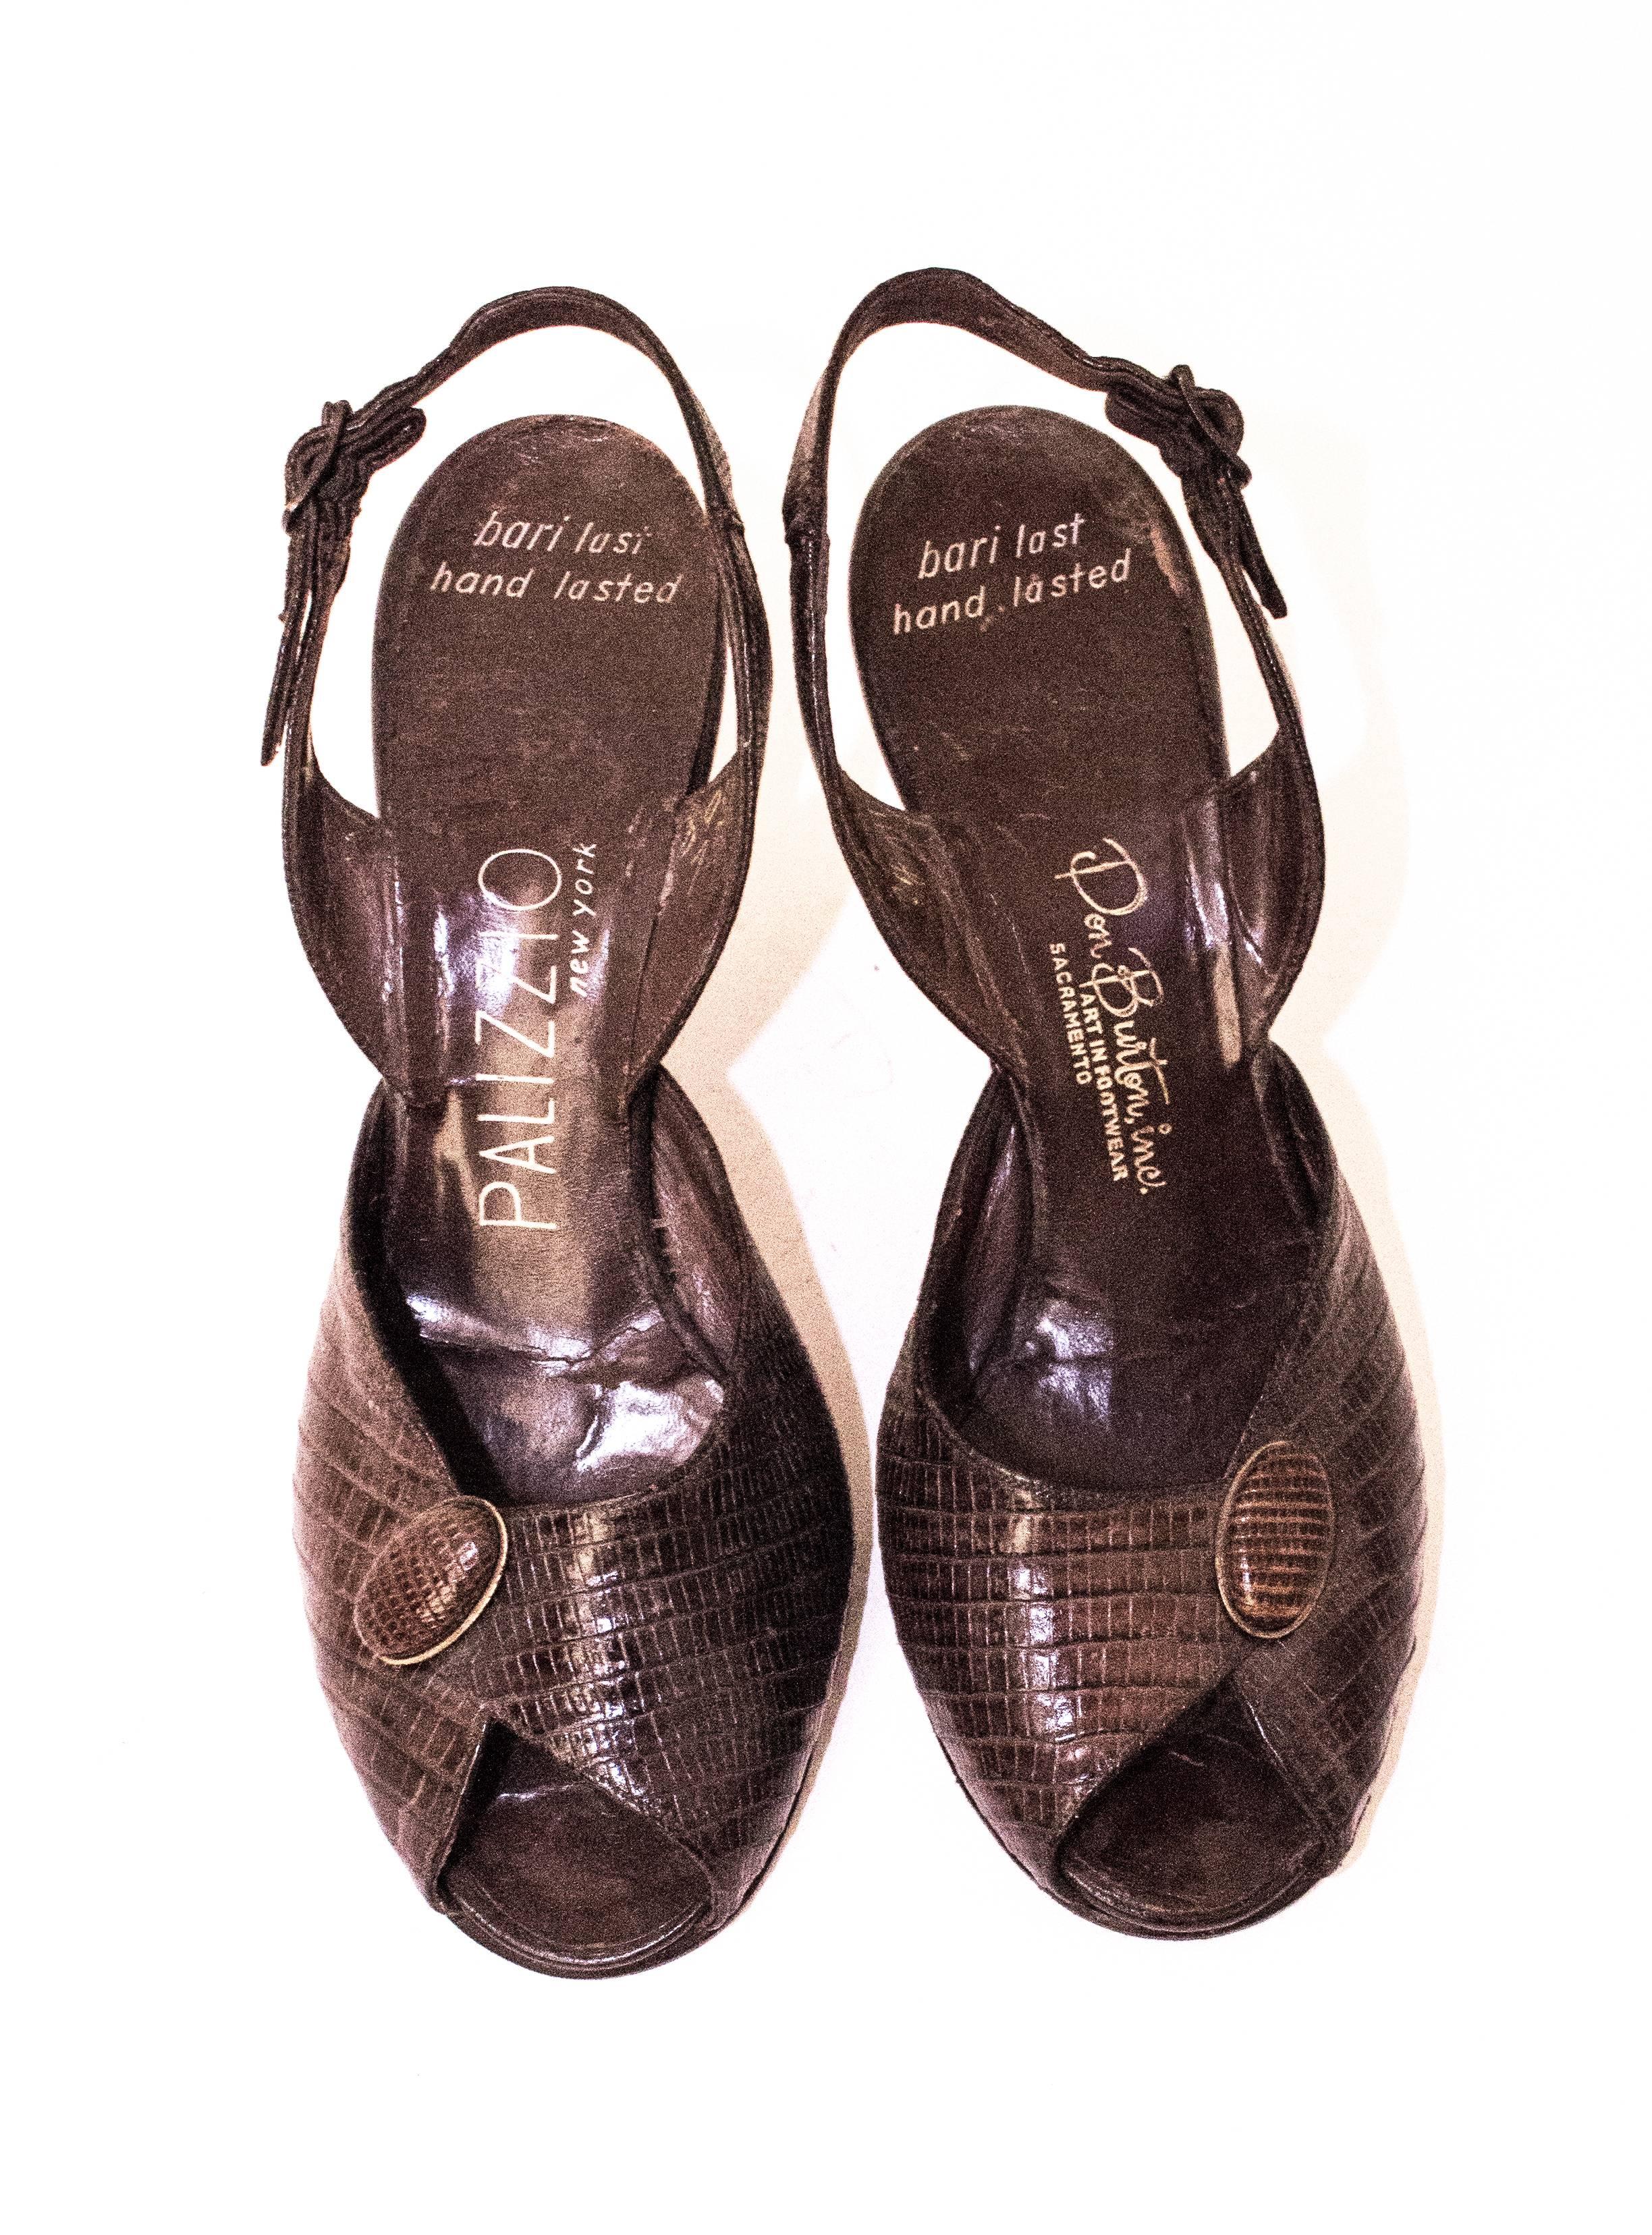 chaussures à talons peep-toe en reptile des années 50. Semelles en cuir. 

Mesures :
Semelle intérieure : 9